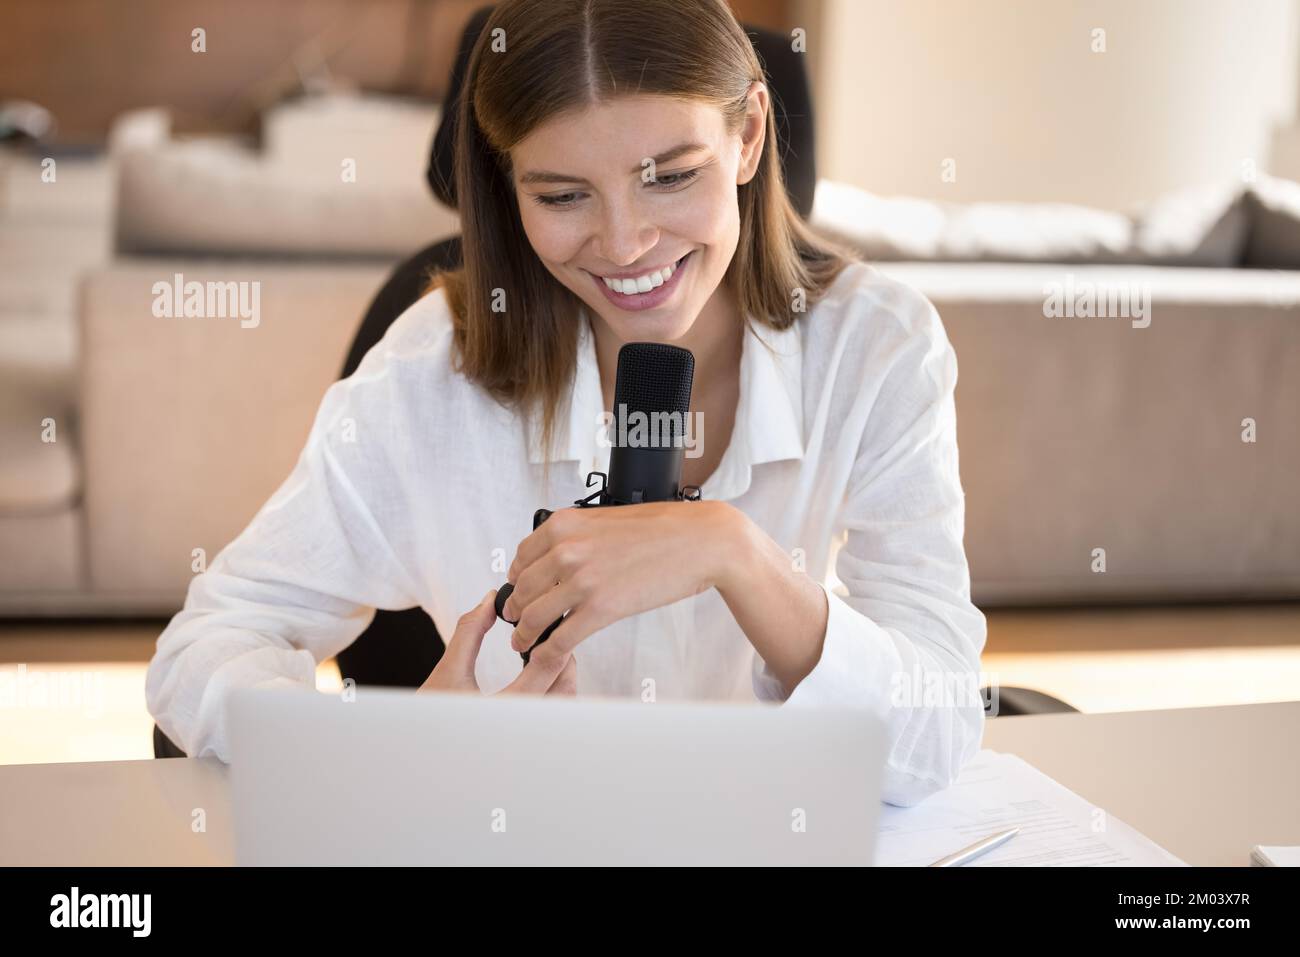 Glückliches, hübsches, junges Bloggermädchen, das vor einem großen professionellen Mikrofon spricht Stockfoto